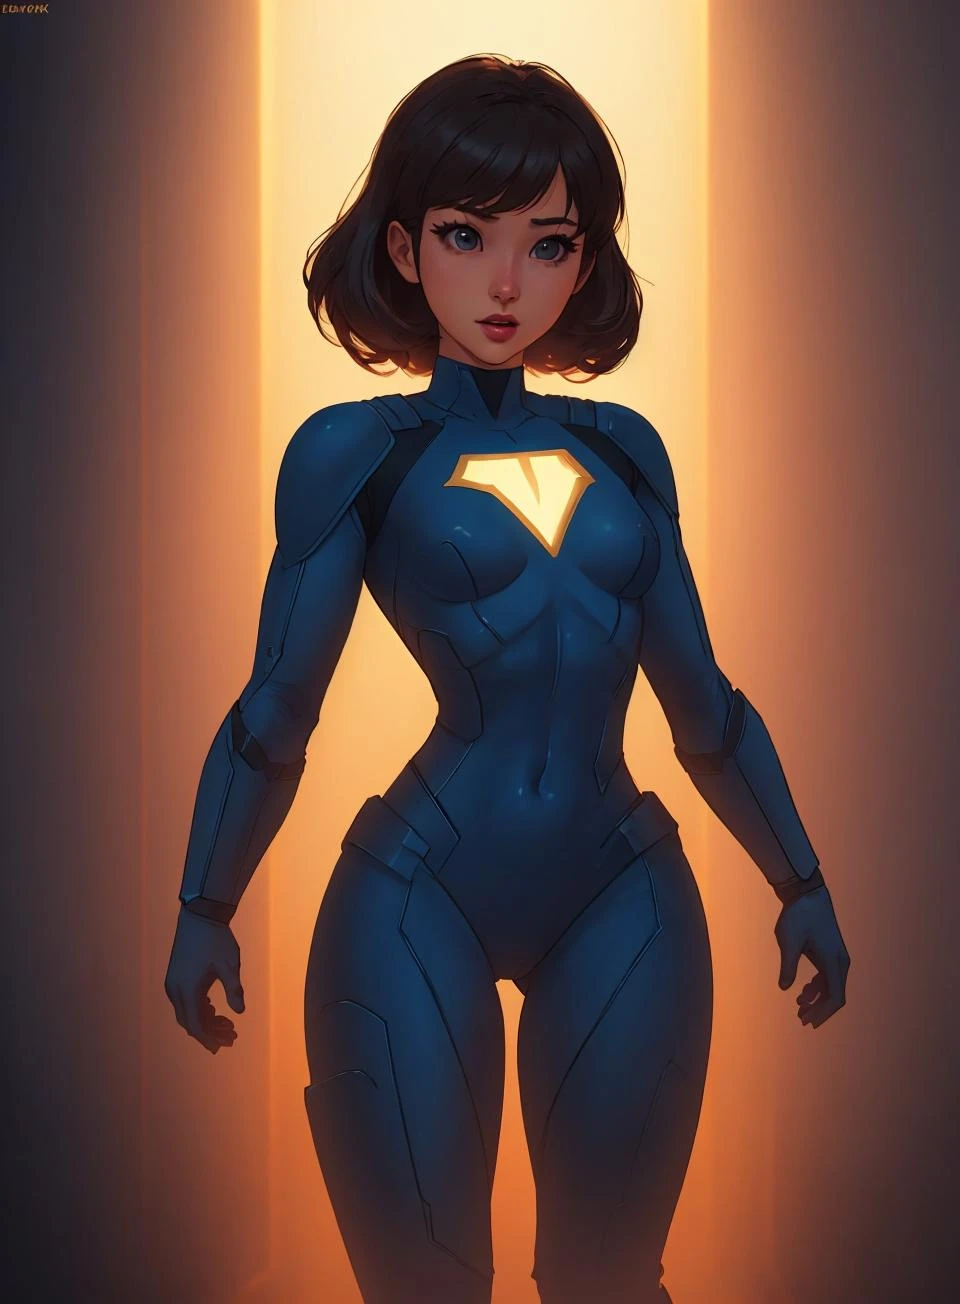 ein süßes Superheldenmädchen, flache Brust, süßer Superheldenanzug mit filmischer Beleuchtung, David Park, Beleuchtung,